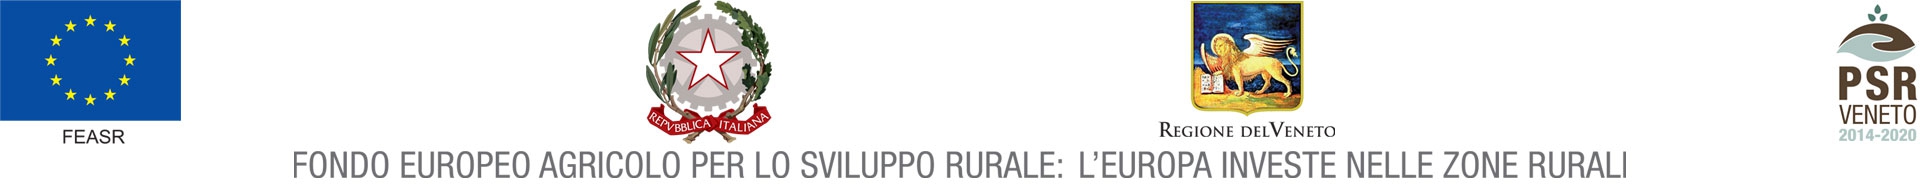 Fondo europeo agricolo per lo sviluppo rurale: l'Europa investe nelle zone rurali 